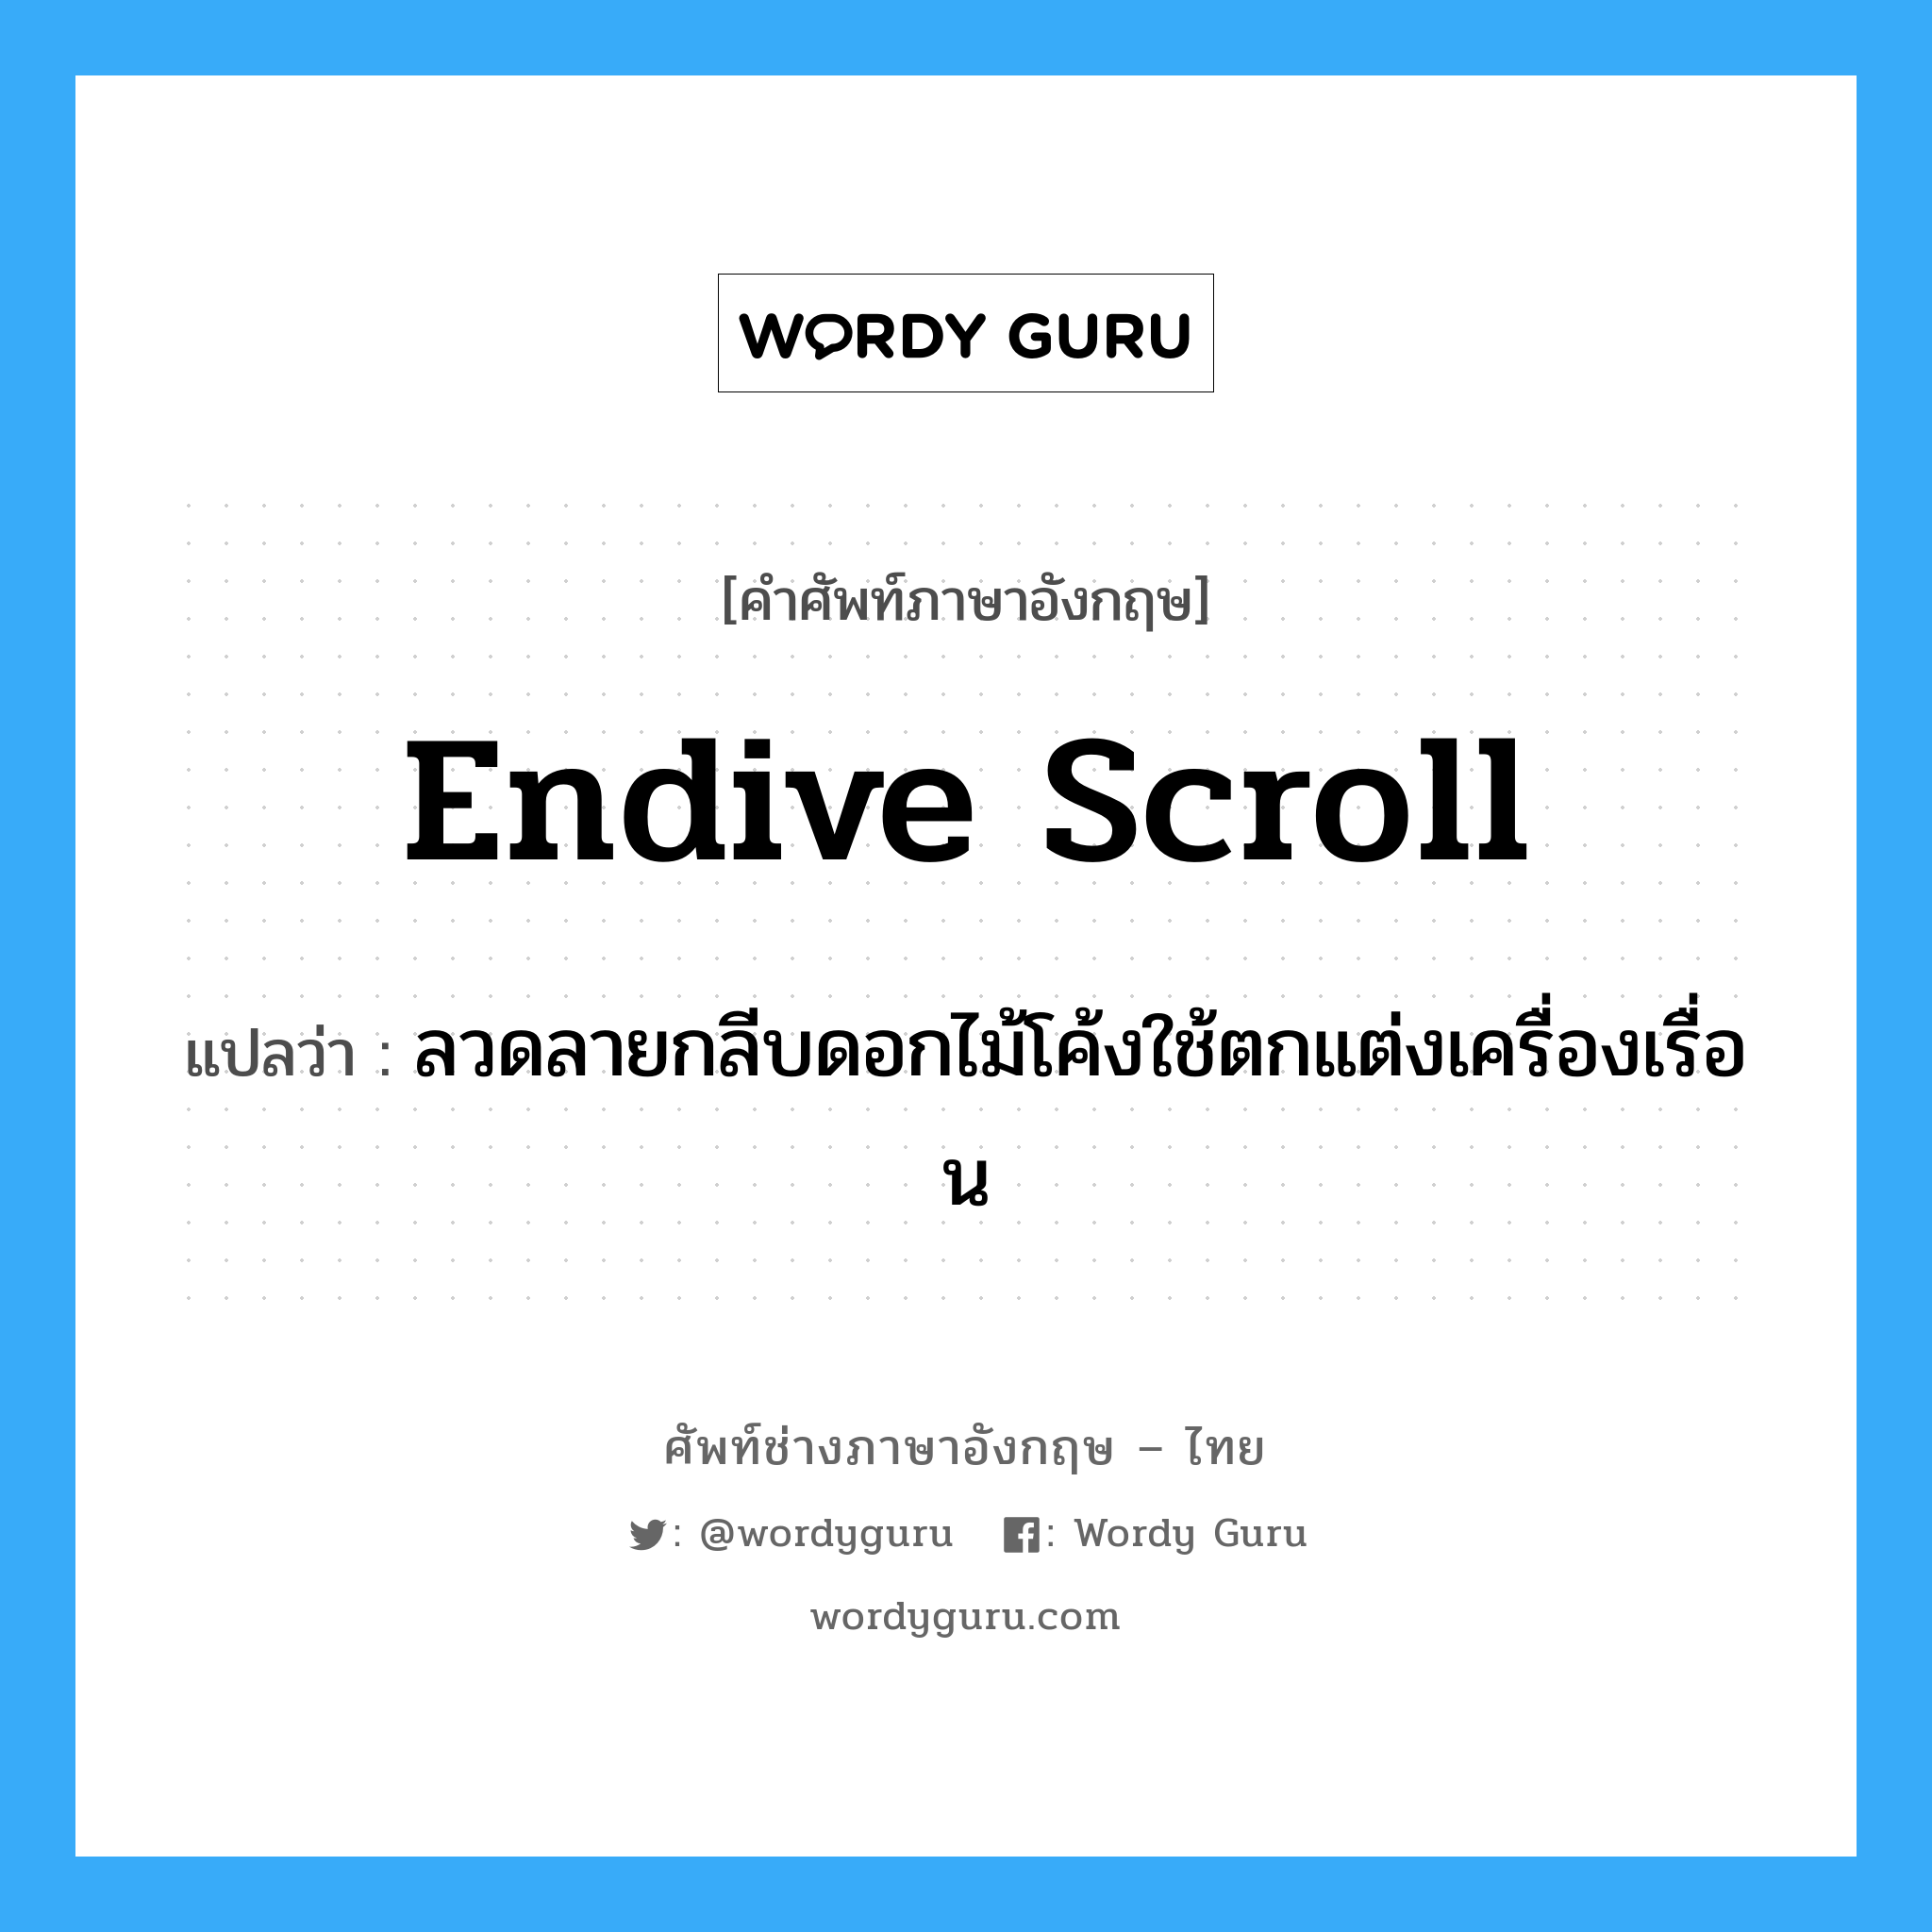 endive scroll แปลว่า?, คำศัพท์ช่างภาษาอังกฤษ - ไทย endive scroll คำศัพท์ภาษาอังกฤษ endive scroll แปลว่า ลวดลายกลีบดอกไม้โค้งใช้ตกแต่งเครื่องเรื่อน